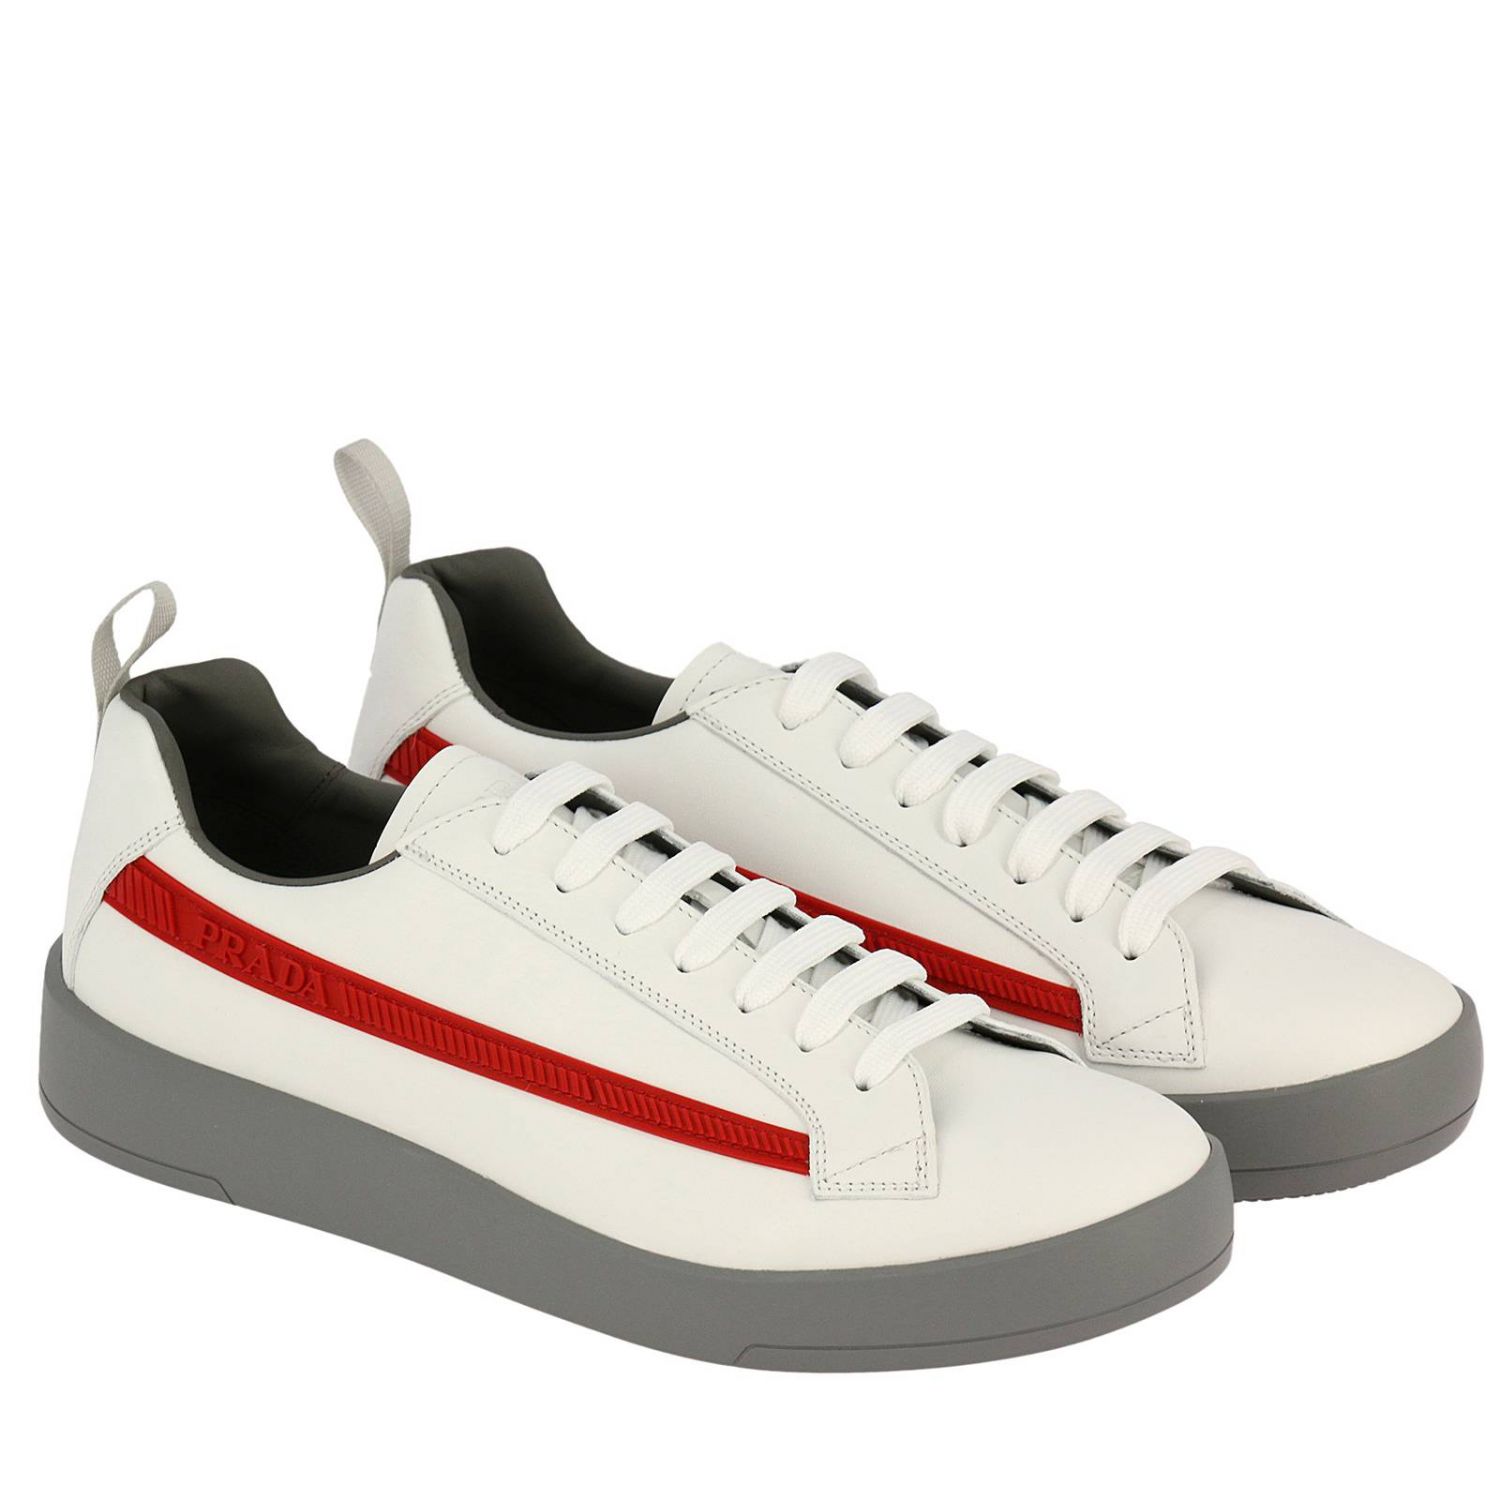 Shoes men Prada | Sneakers Prada Men White | Sneakers Prada 4E3196 6DT ...